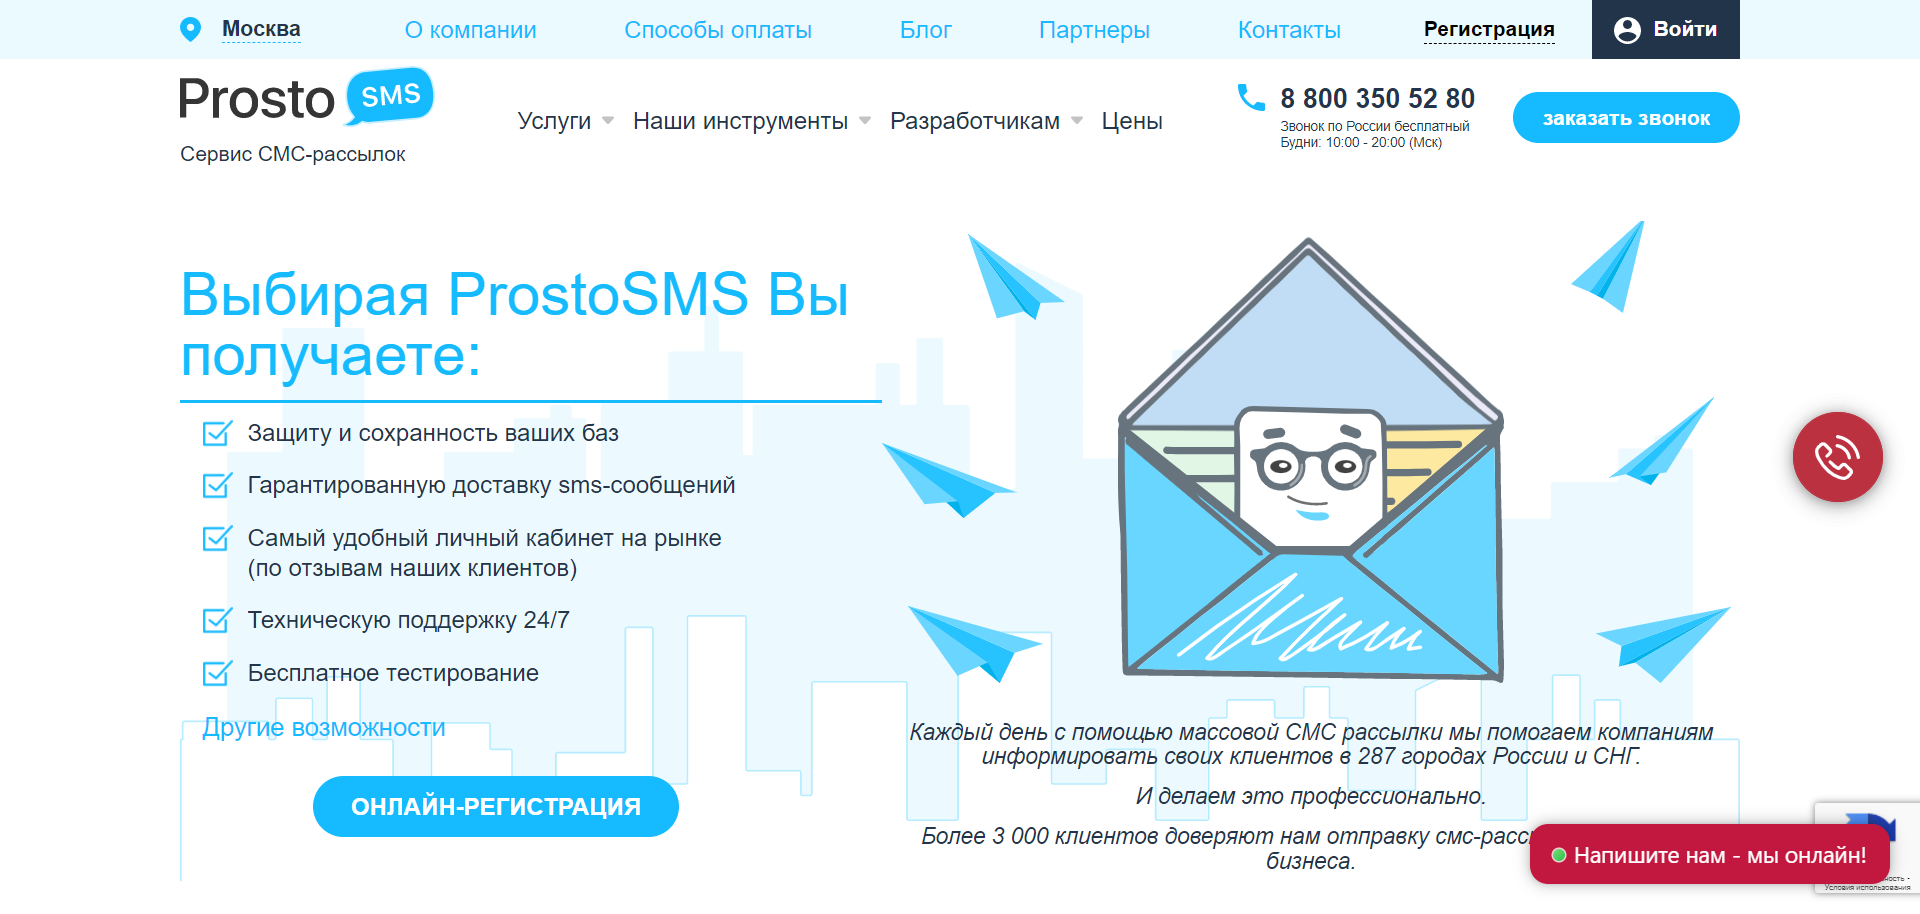 Обзор сервисов SMS-рассылок: популярные сервисы